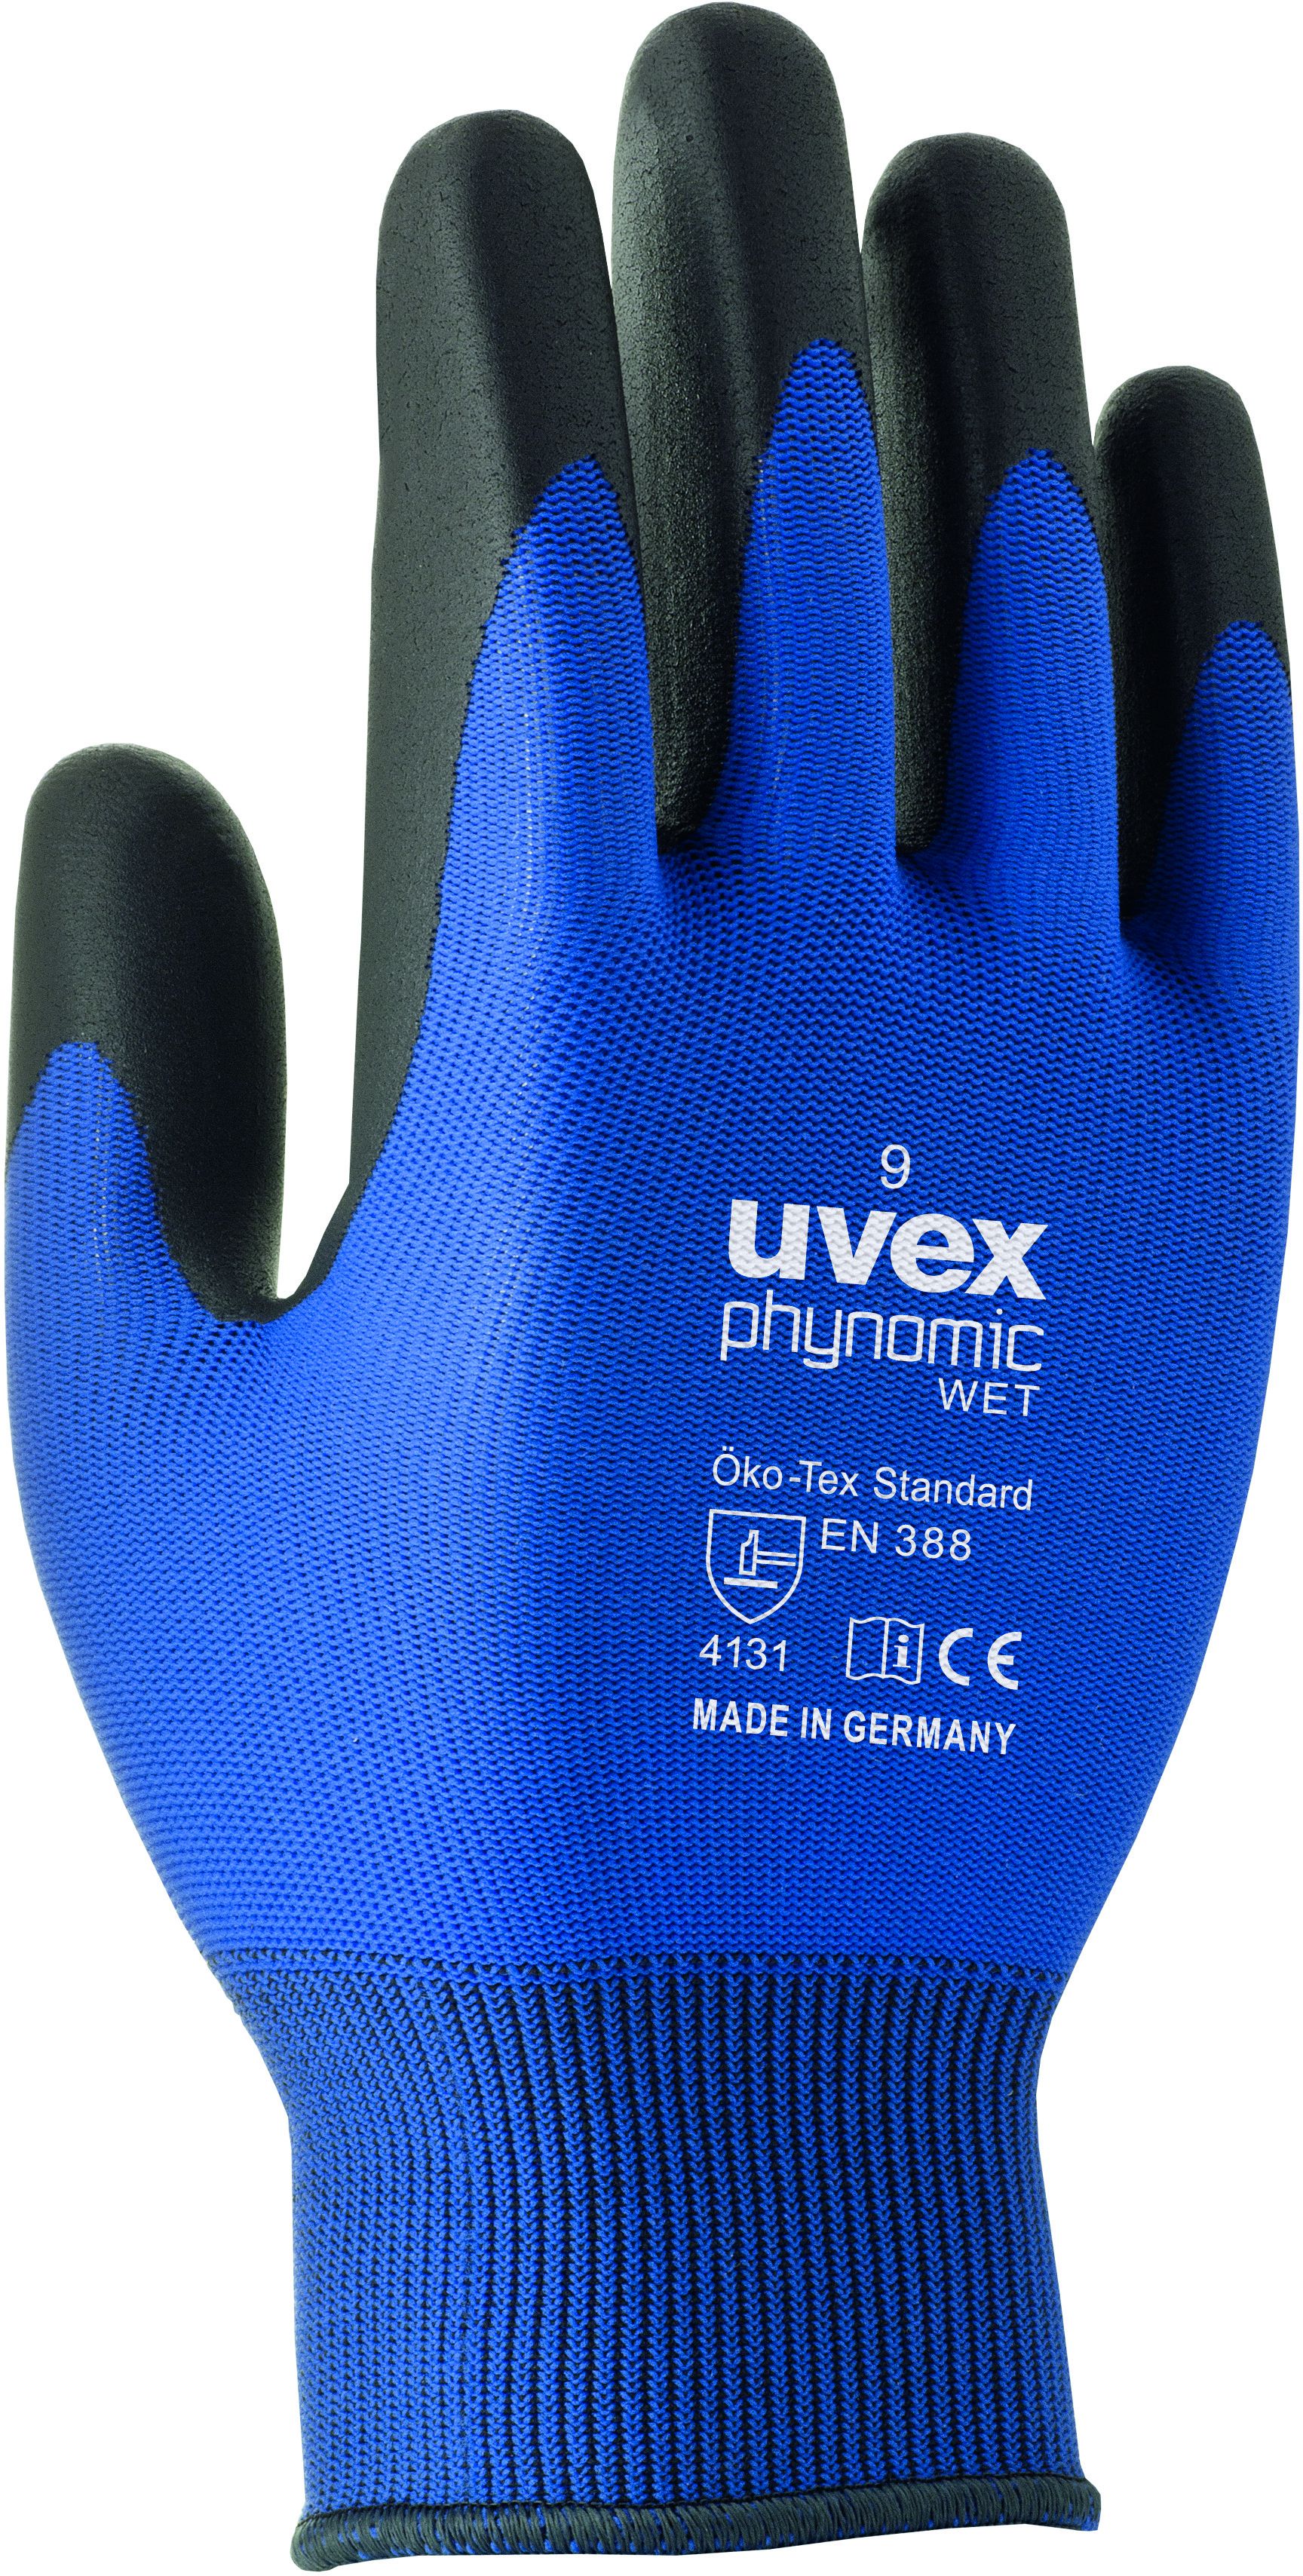 UVEX Arbeitshandschuh phynomic WET Gr. 12, blau/anthrazit, Art. 60060 - Arbeitsschutz